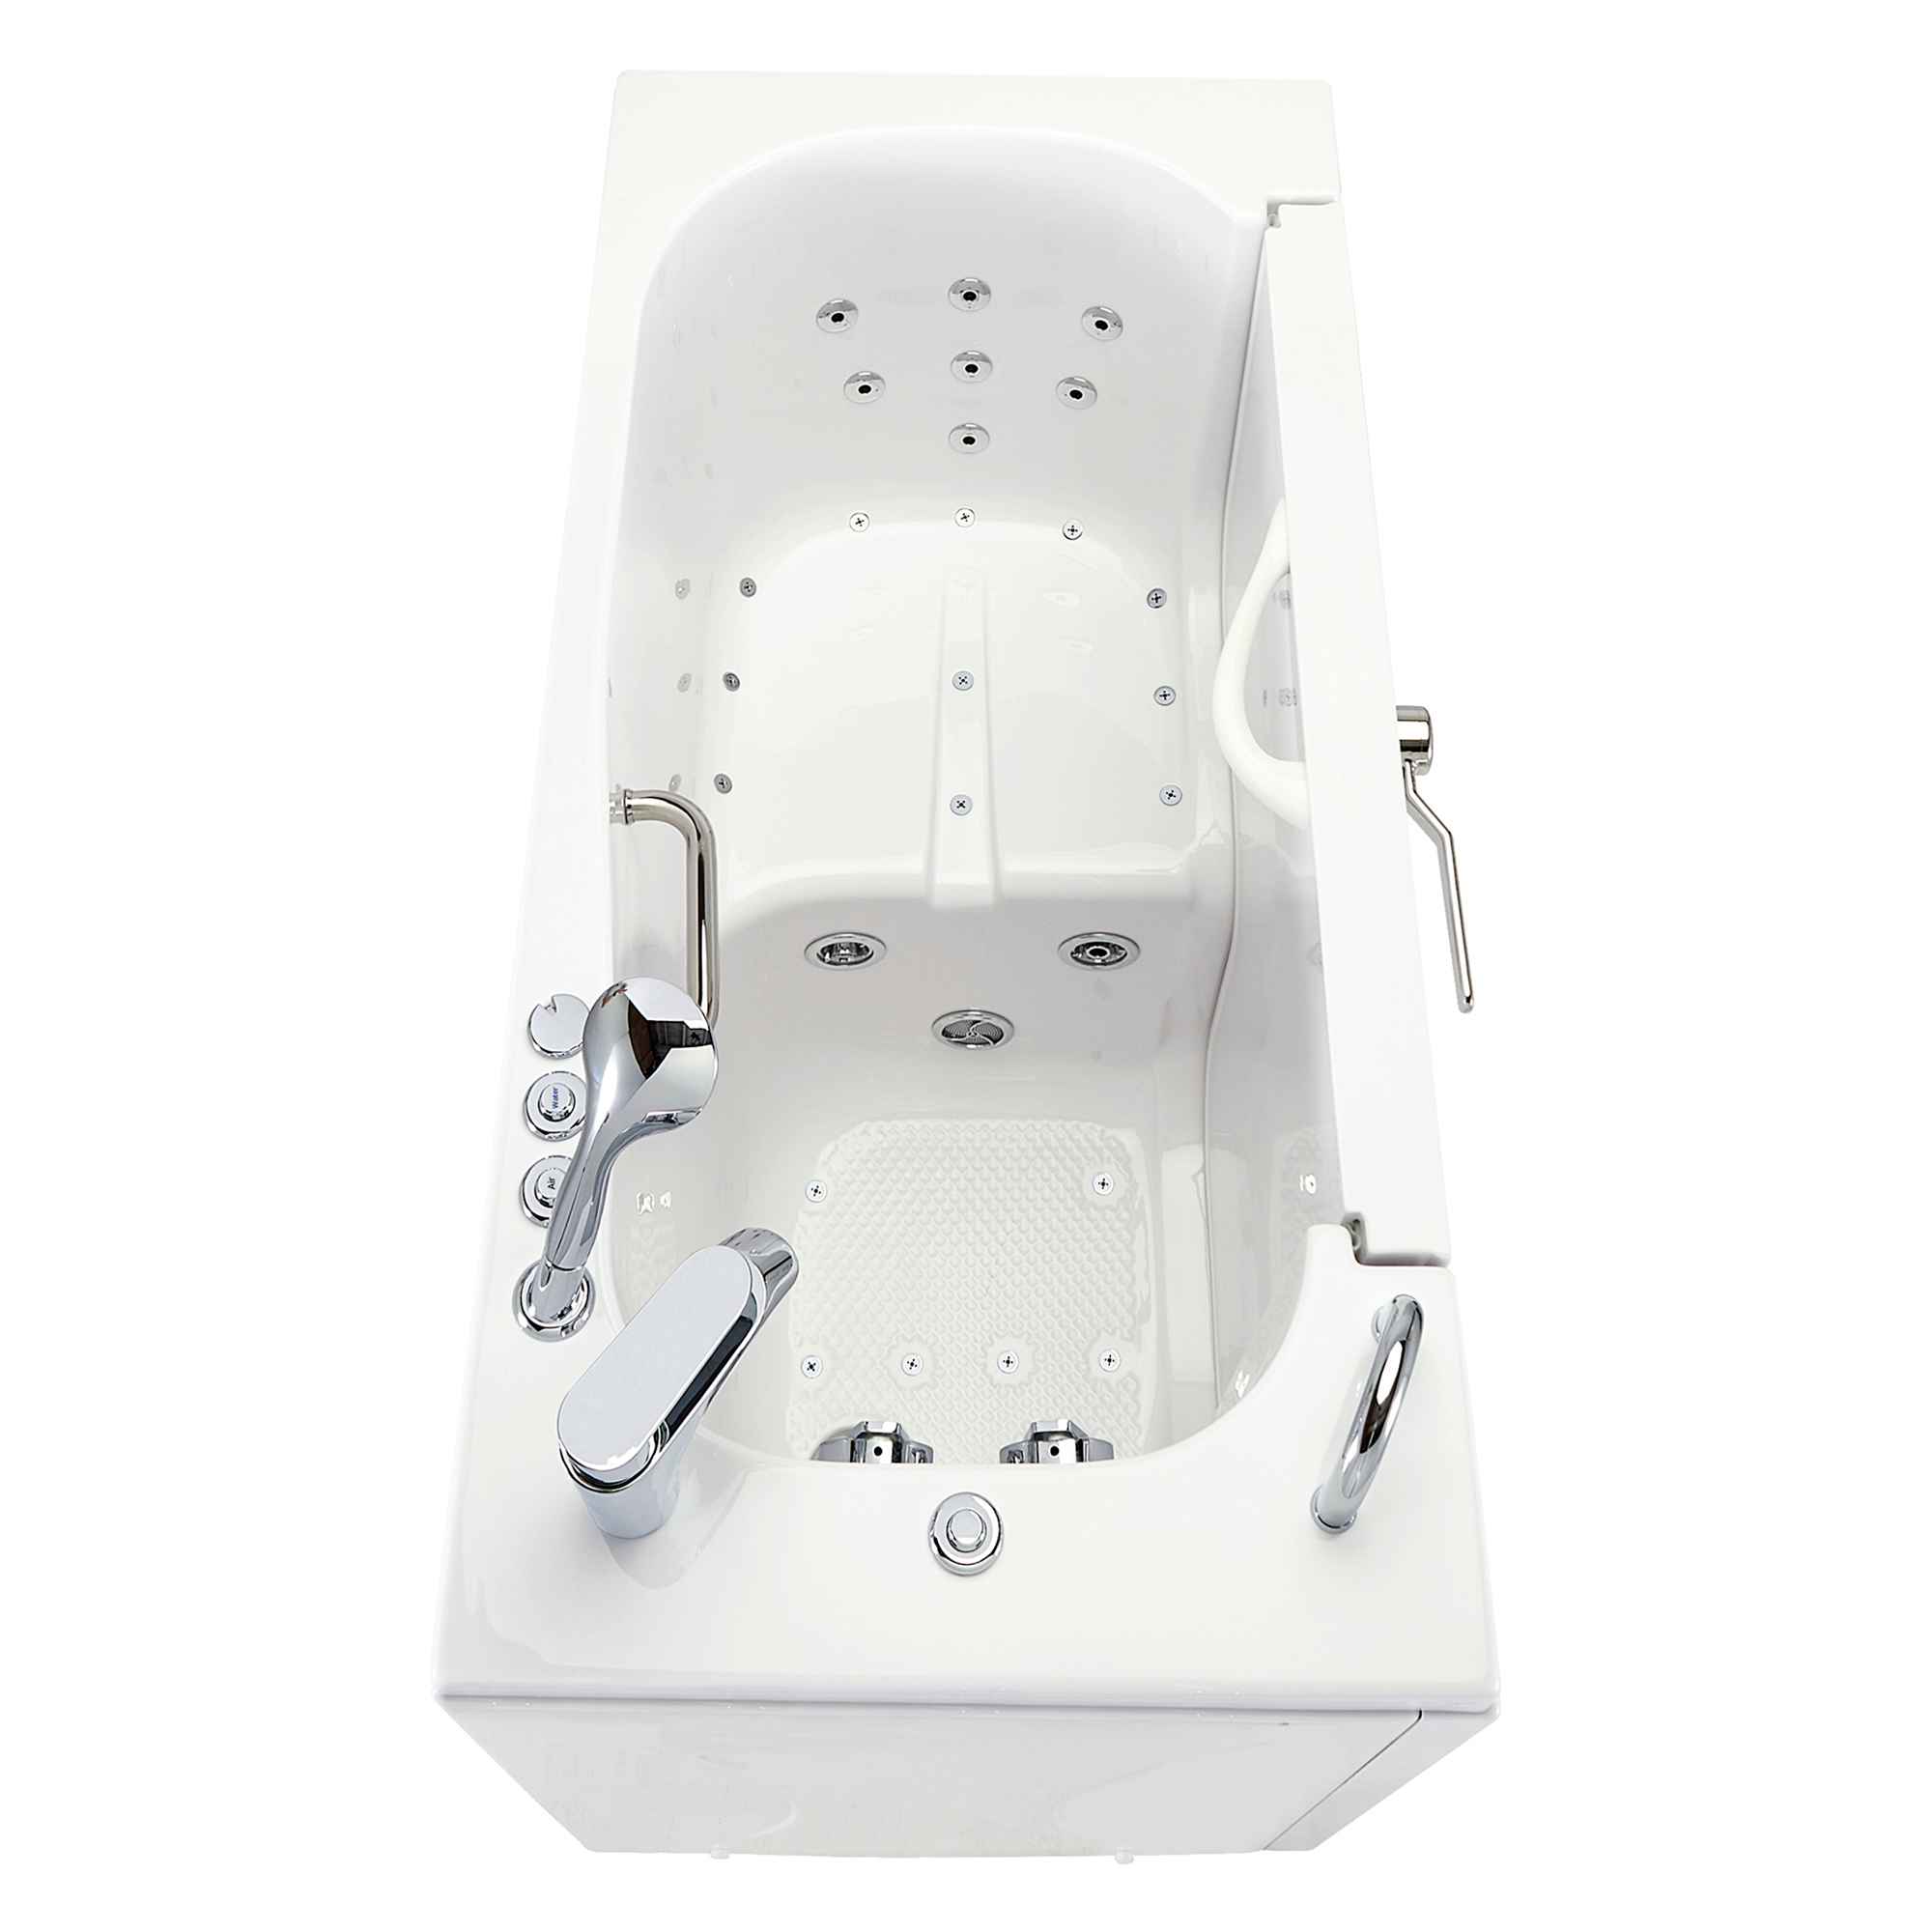 Ella Wheelchair Transfer 26"x52" Acrylic Air and Hydro Massage Walk-In Bathtub with Outward Swing Door, 2 Piece Fast Fill Faucet, 2" Dual Drain Bath Tub Ella's Bubbles   